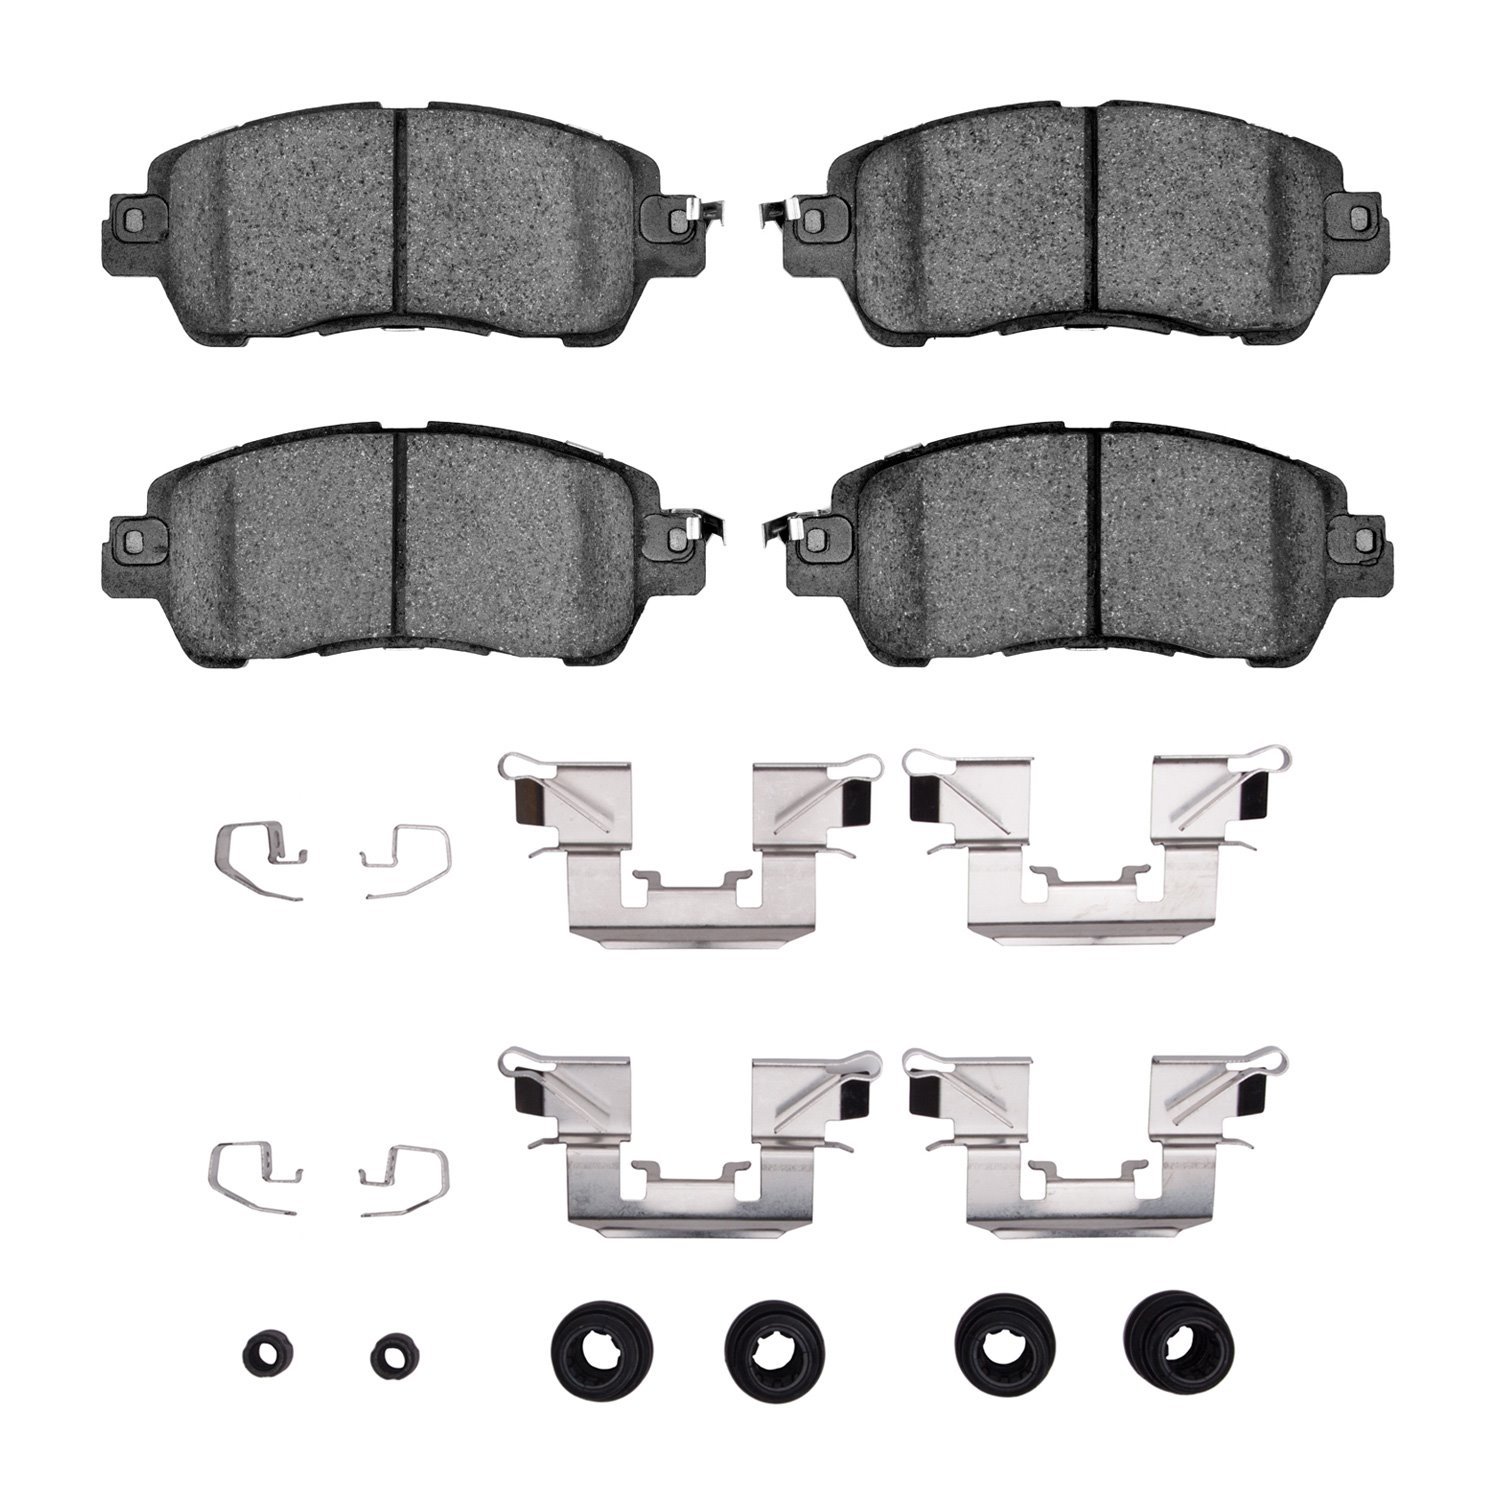 Ceramic Brake Pads & Hardware Kit, 2016-2020 Fits Multiple Makes/Models, Position: Front